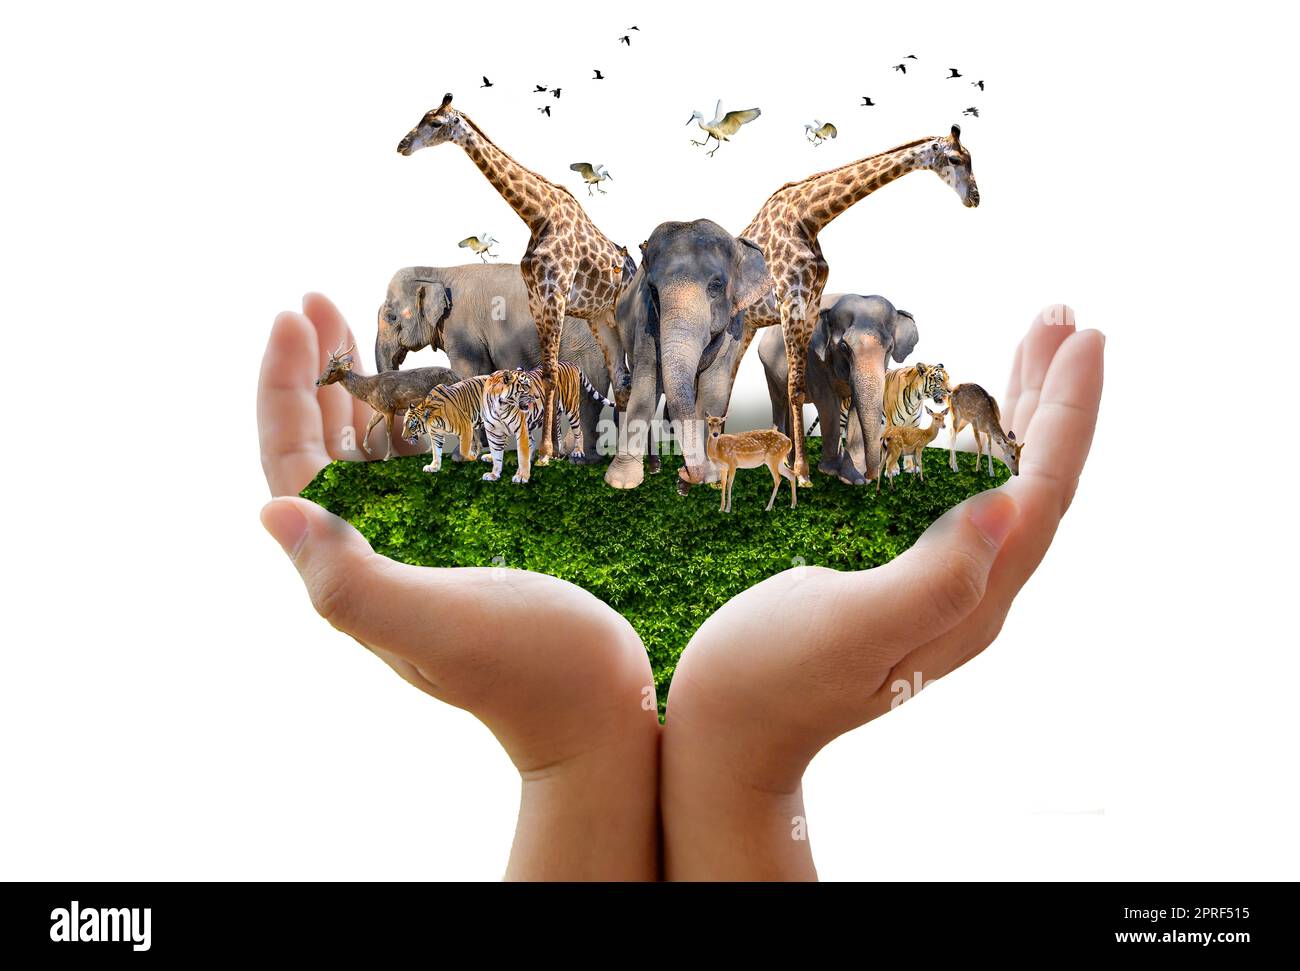 Giornata Mondiale degli Animali Giornata Mondiale della Fauna gruppi di bestie selvatiche sono stati riuniti nelle mani delle persone Foto Stock